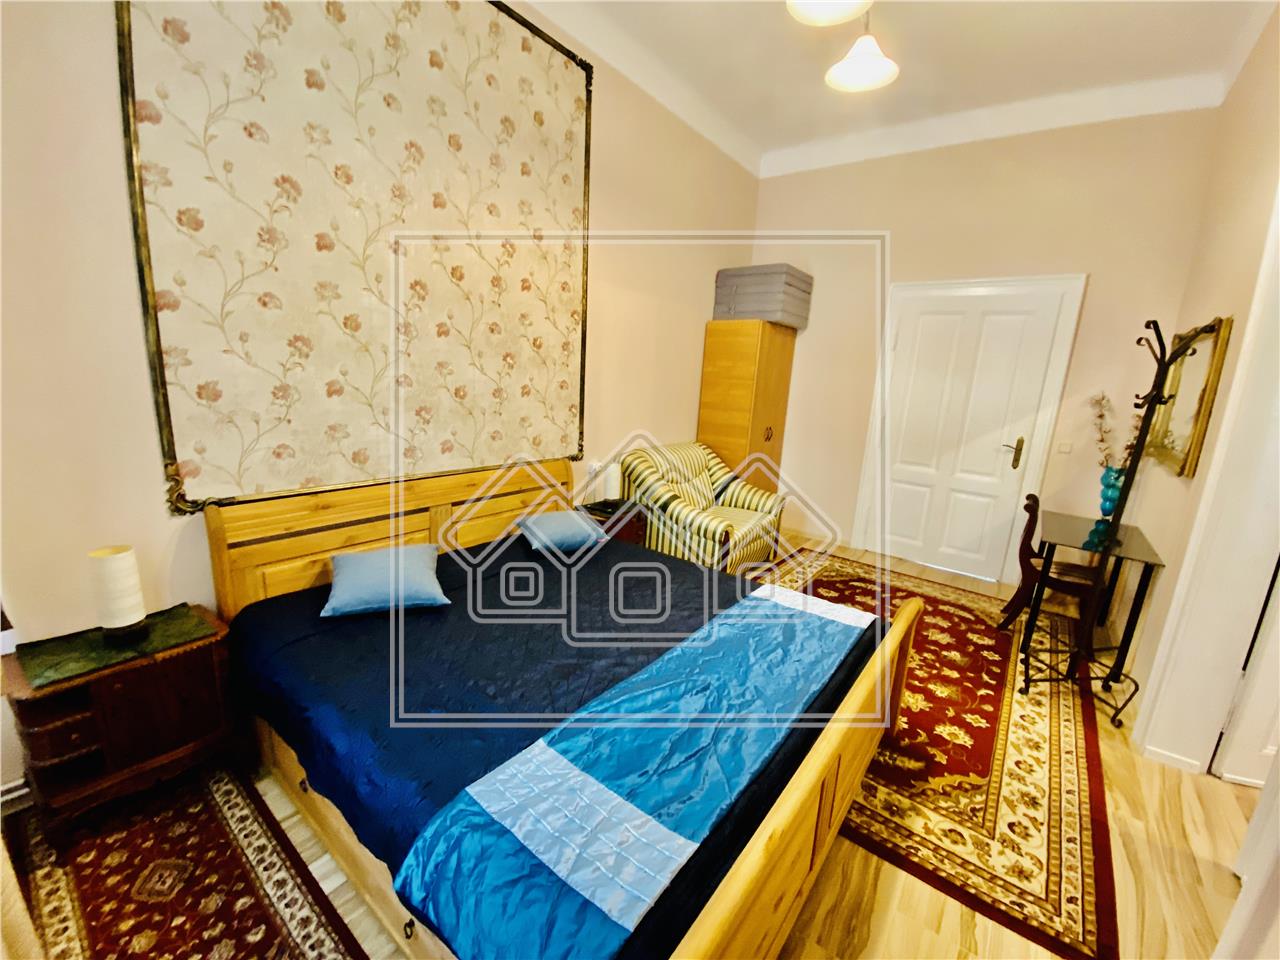 Apartament de vanzare in Sibiu -5 camere si 3 bai- Pretabil investitii